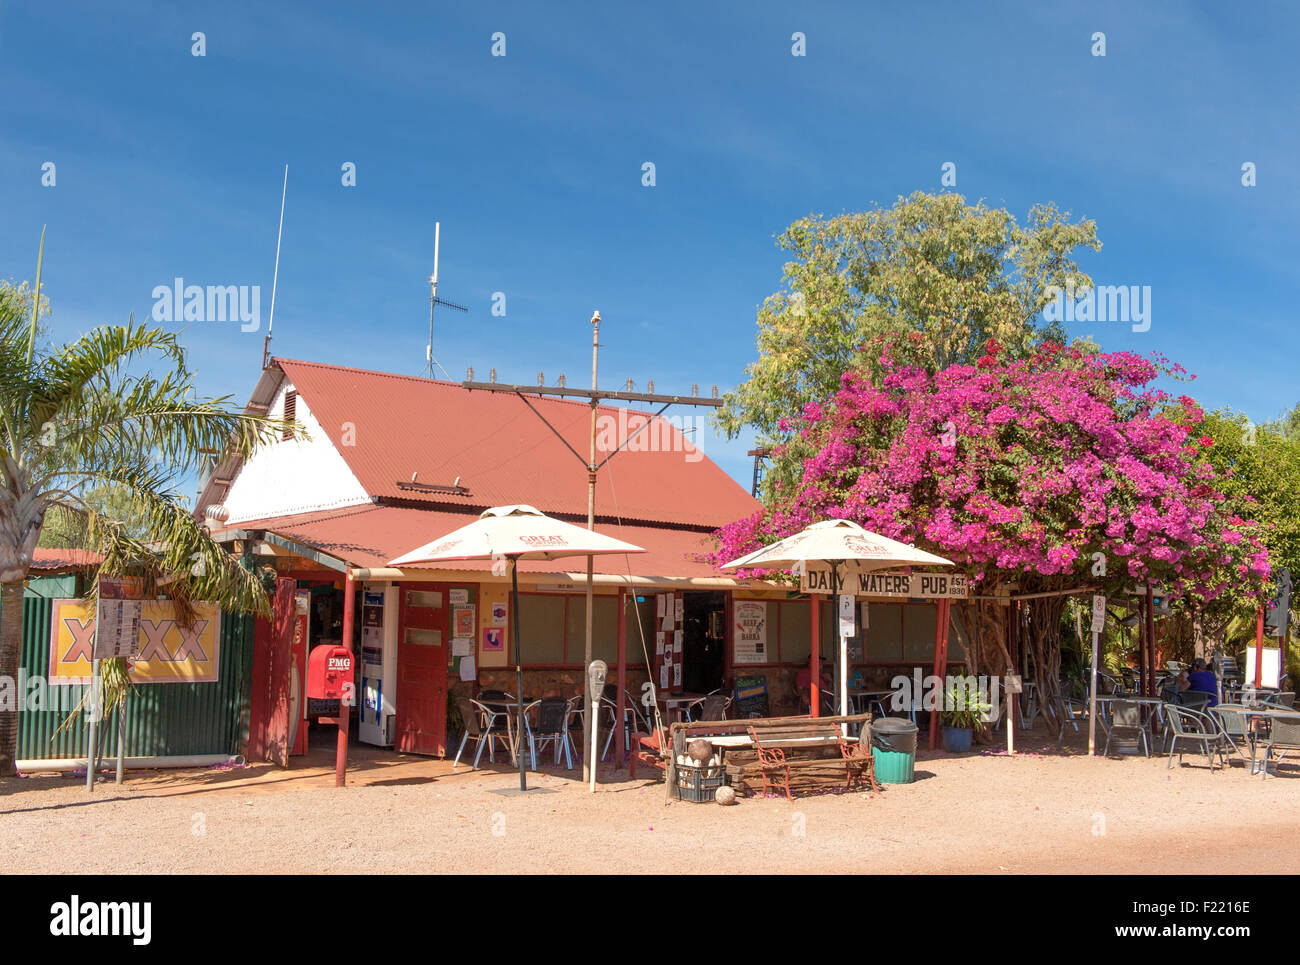 Un outback leyenda del Territorio del Norte: el Daly Waters Pub. Aquí: la entrada y zona de estar exterior Foto de stock